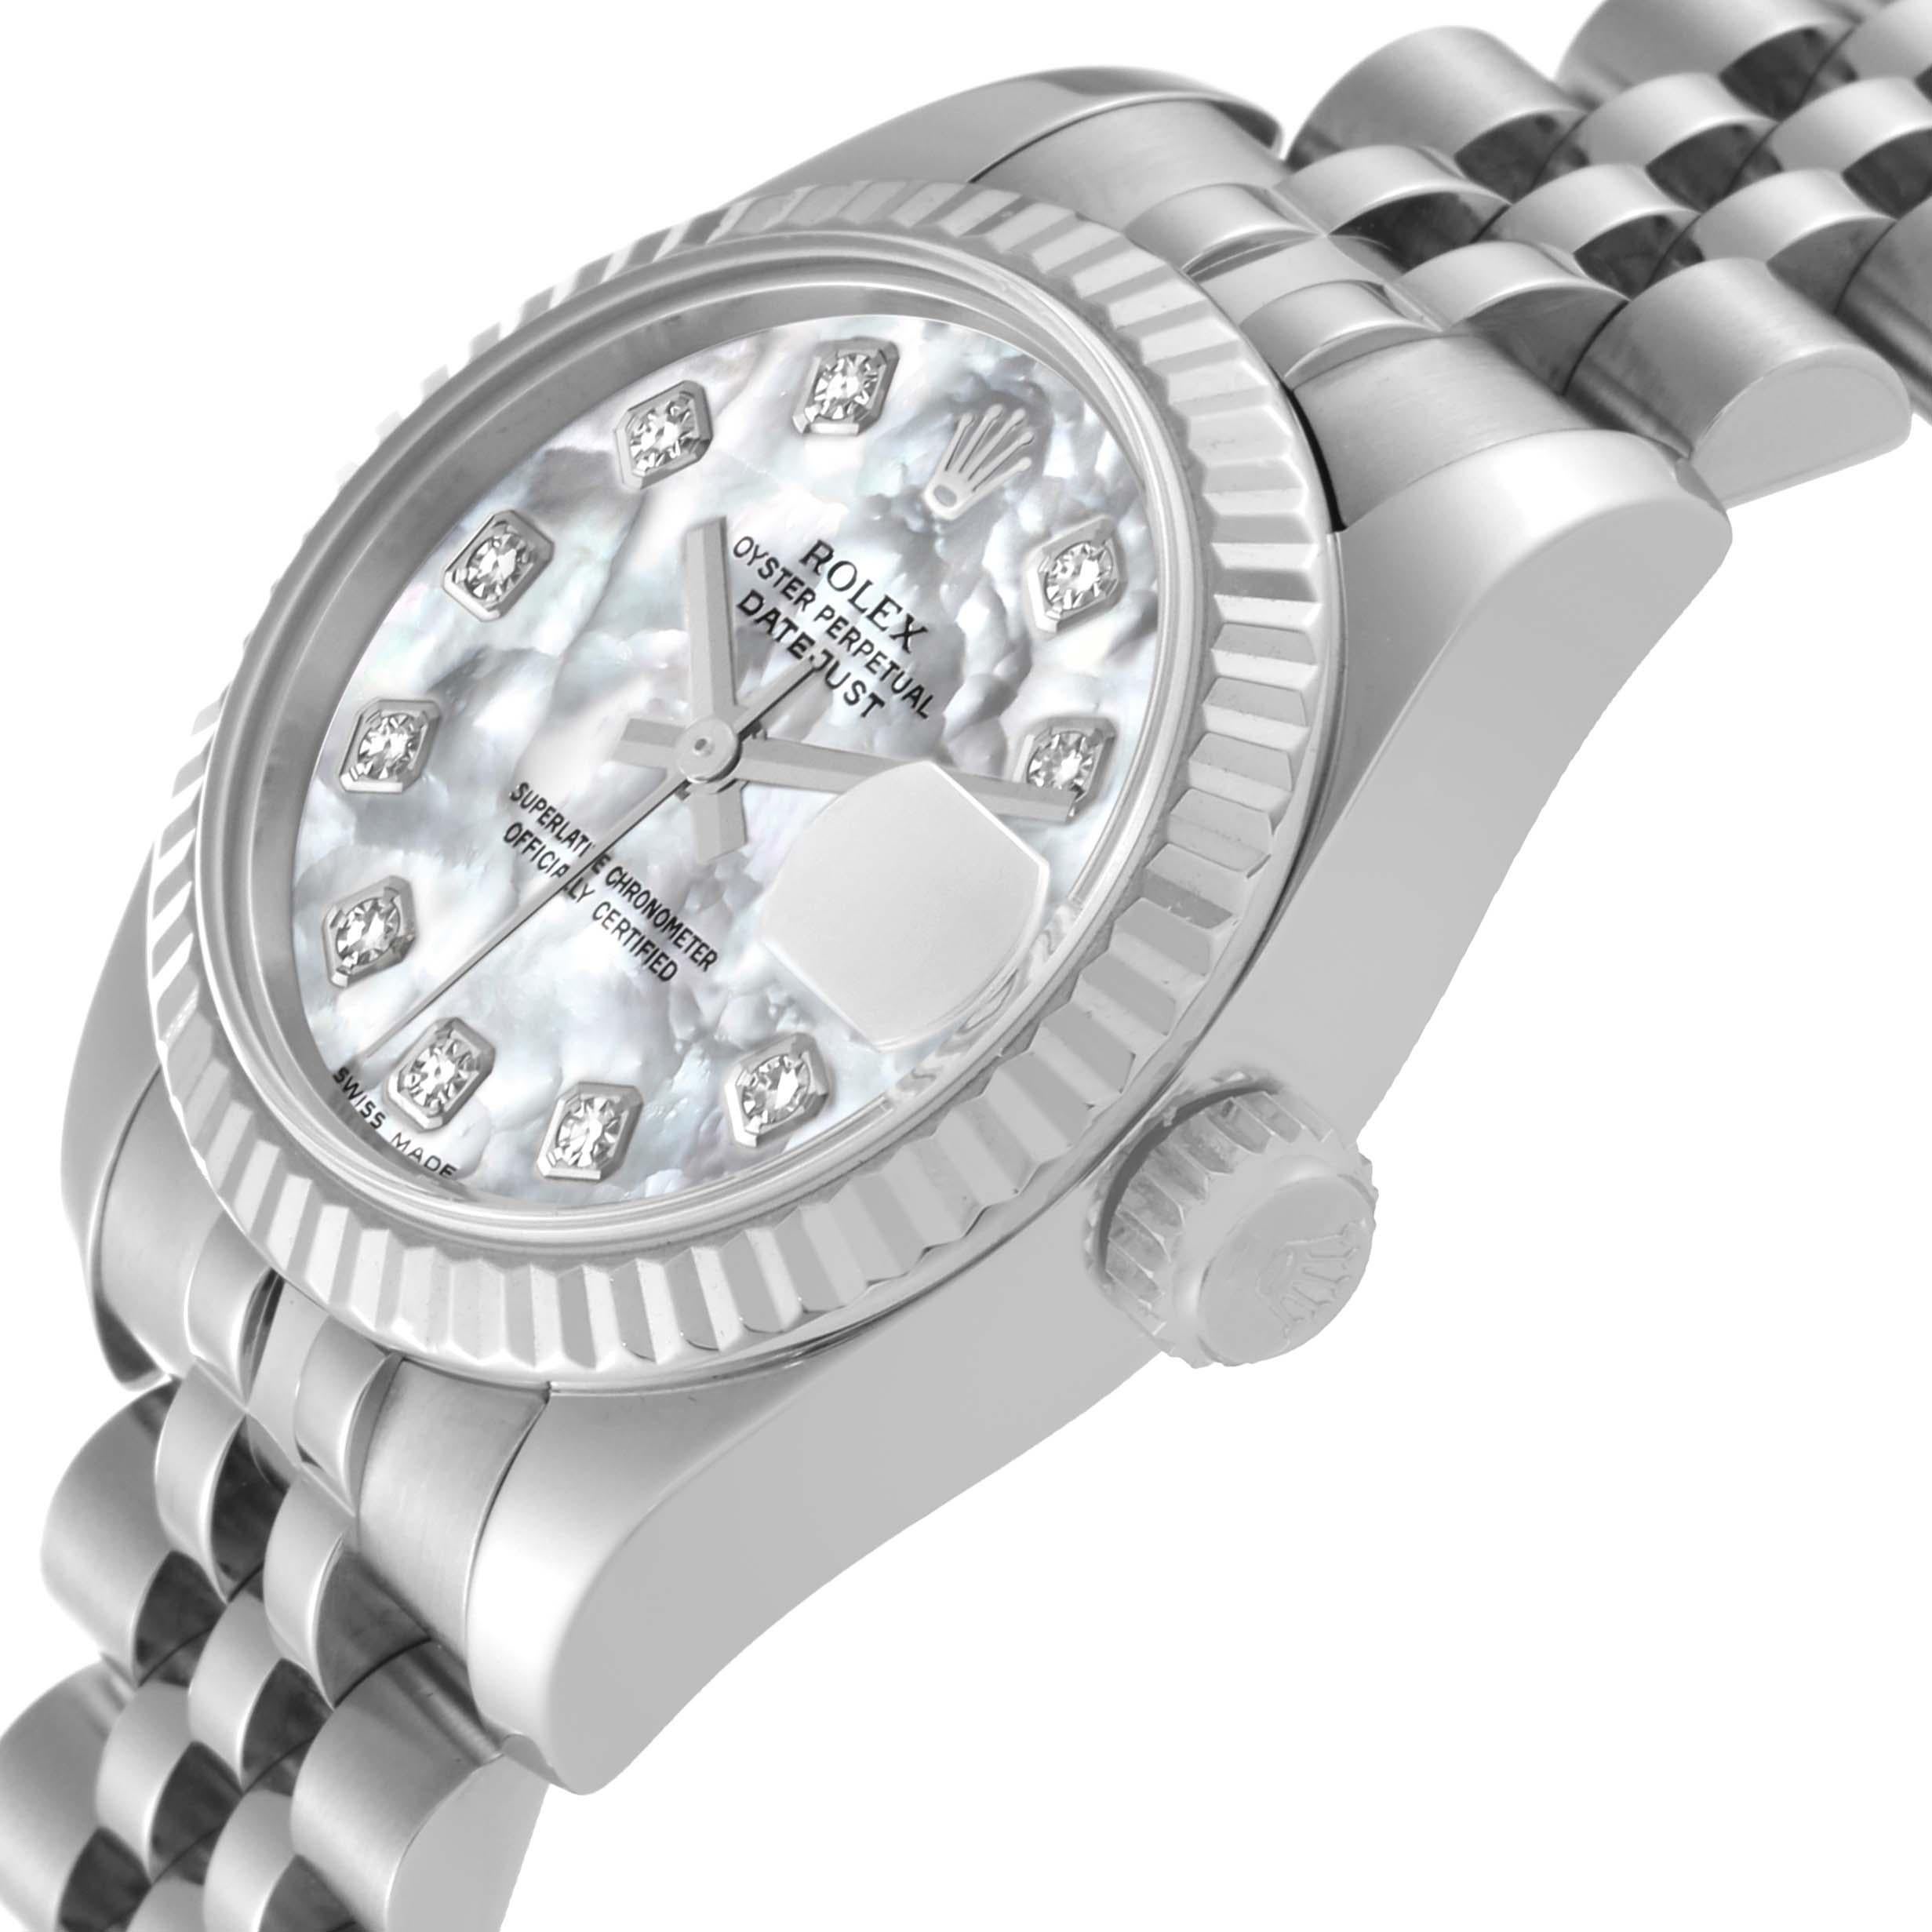 Rolex Datejust Steel White Gold Mother of Pearl Diamond Dial Ladies Watch 179174. Mouvement automatique à remontage automatique, officiellement certifié chronomètre. Boîtier oyster en acier inoxydable de 26.0 mm de diamètre. Logo Rolex sur la